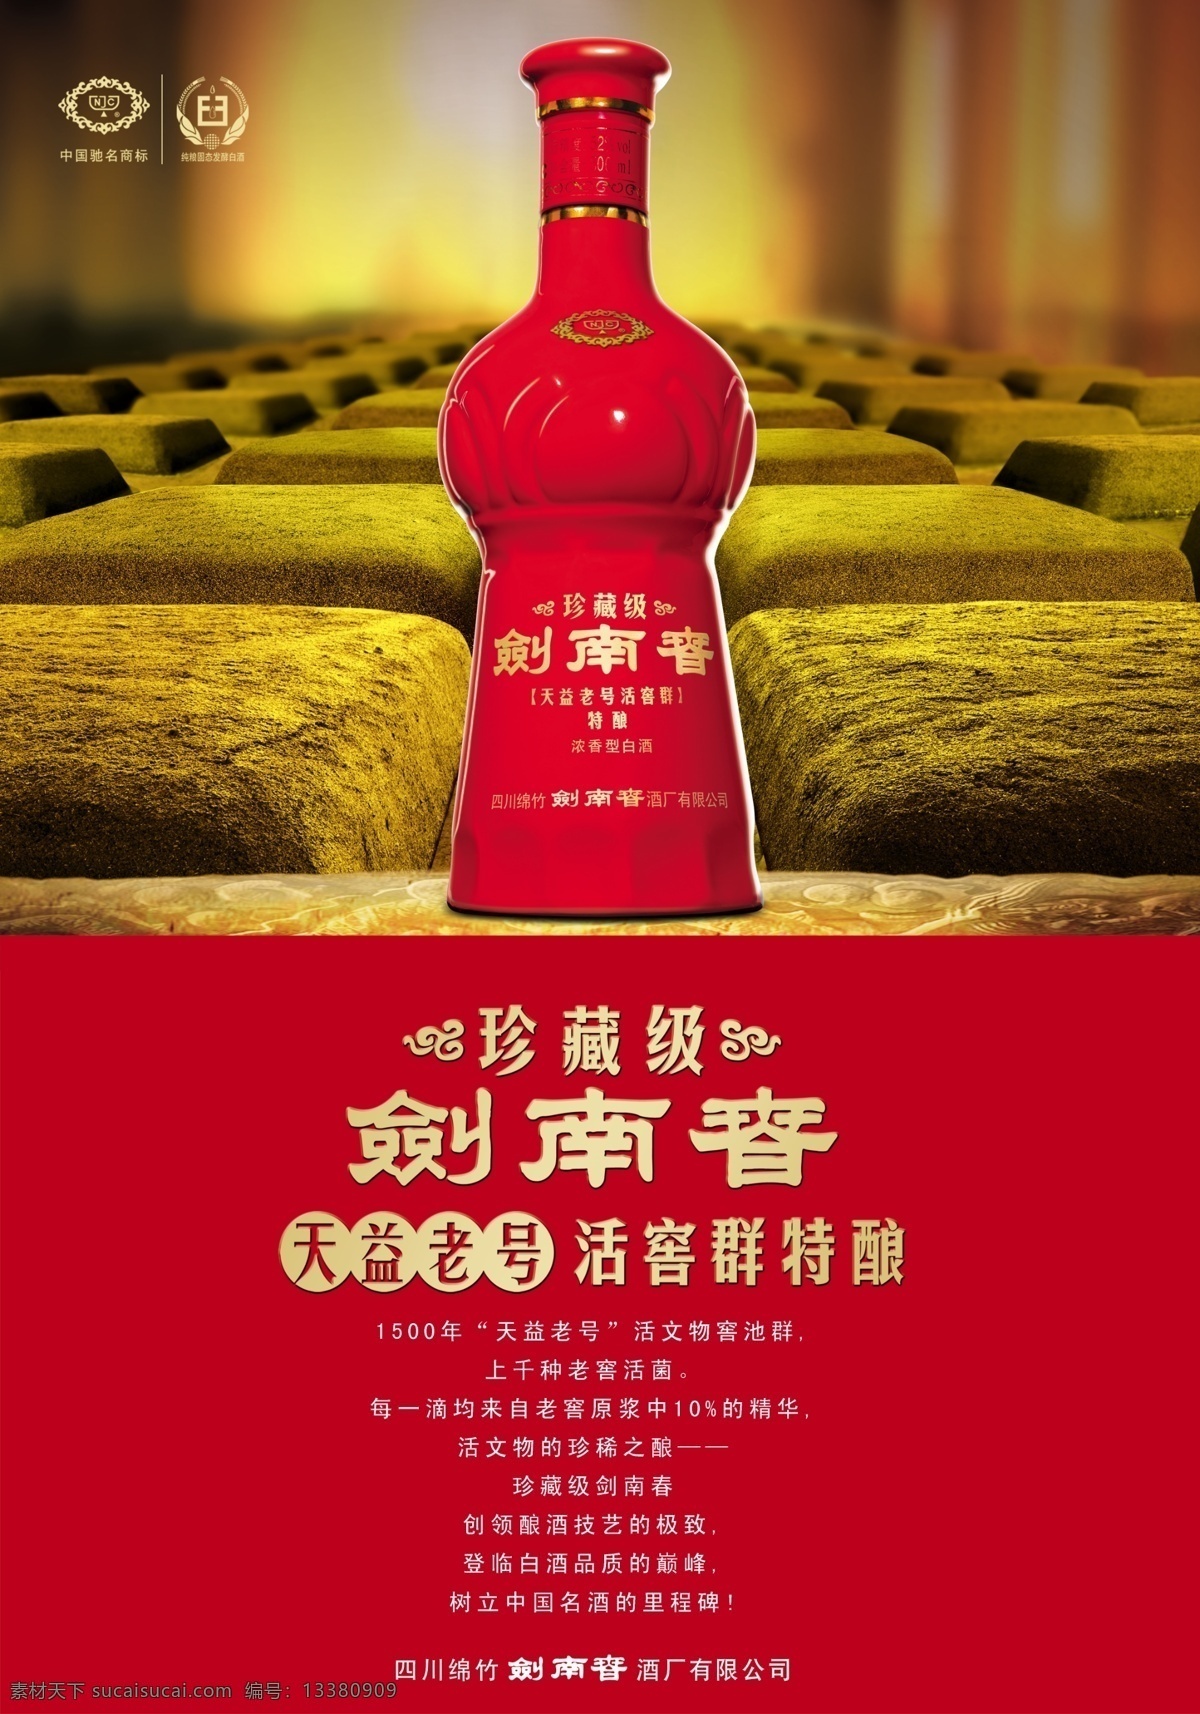 剑南春 珍藏 级 海报 分层 酒 主画面海报 剑南春标志 大红瓶子 活动内容 金色的底 红色的底 广告图片